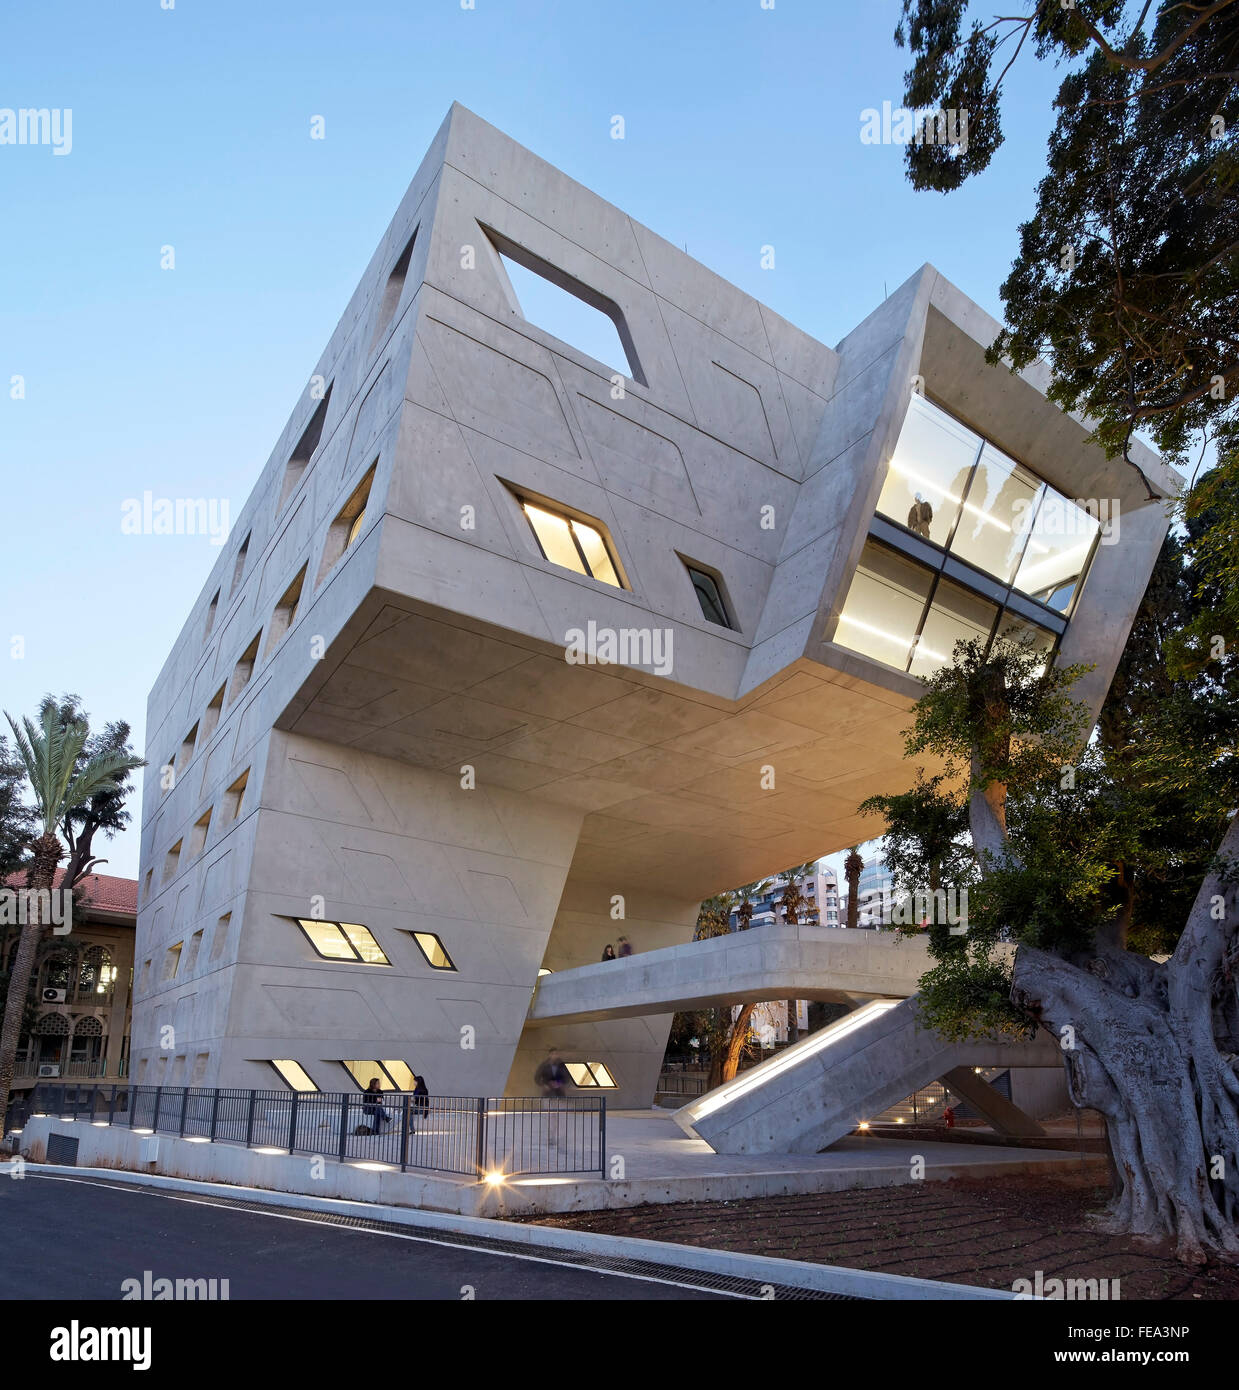 Abenddämmerung Höhe von der Straße. Issam Fares Institut, Beirut, Beirut, Libanon. Architekt: Zaha Hadid Architects, 2014. Stockfoto